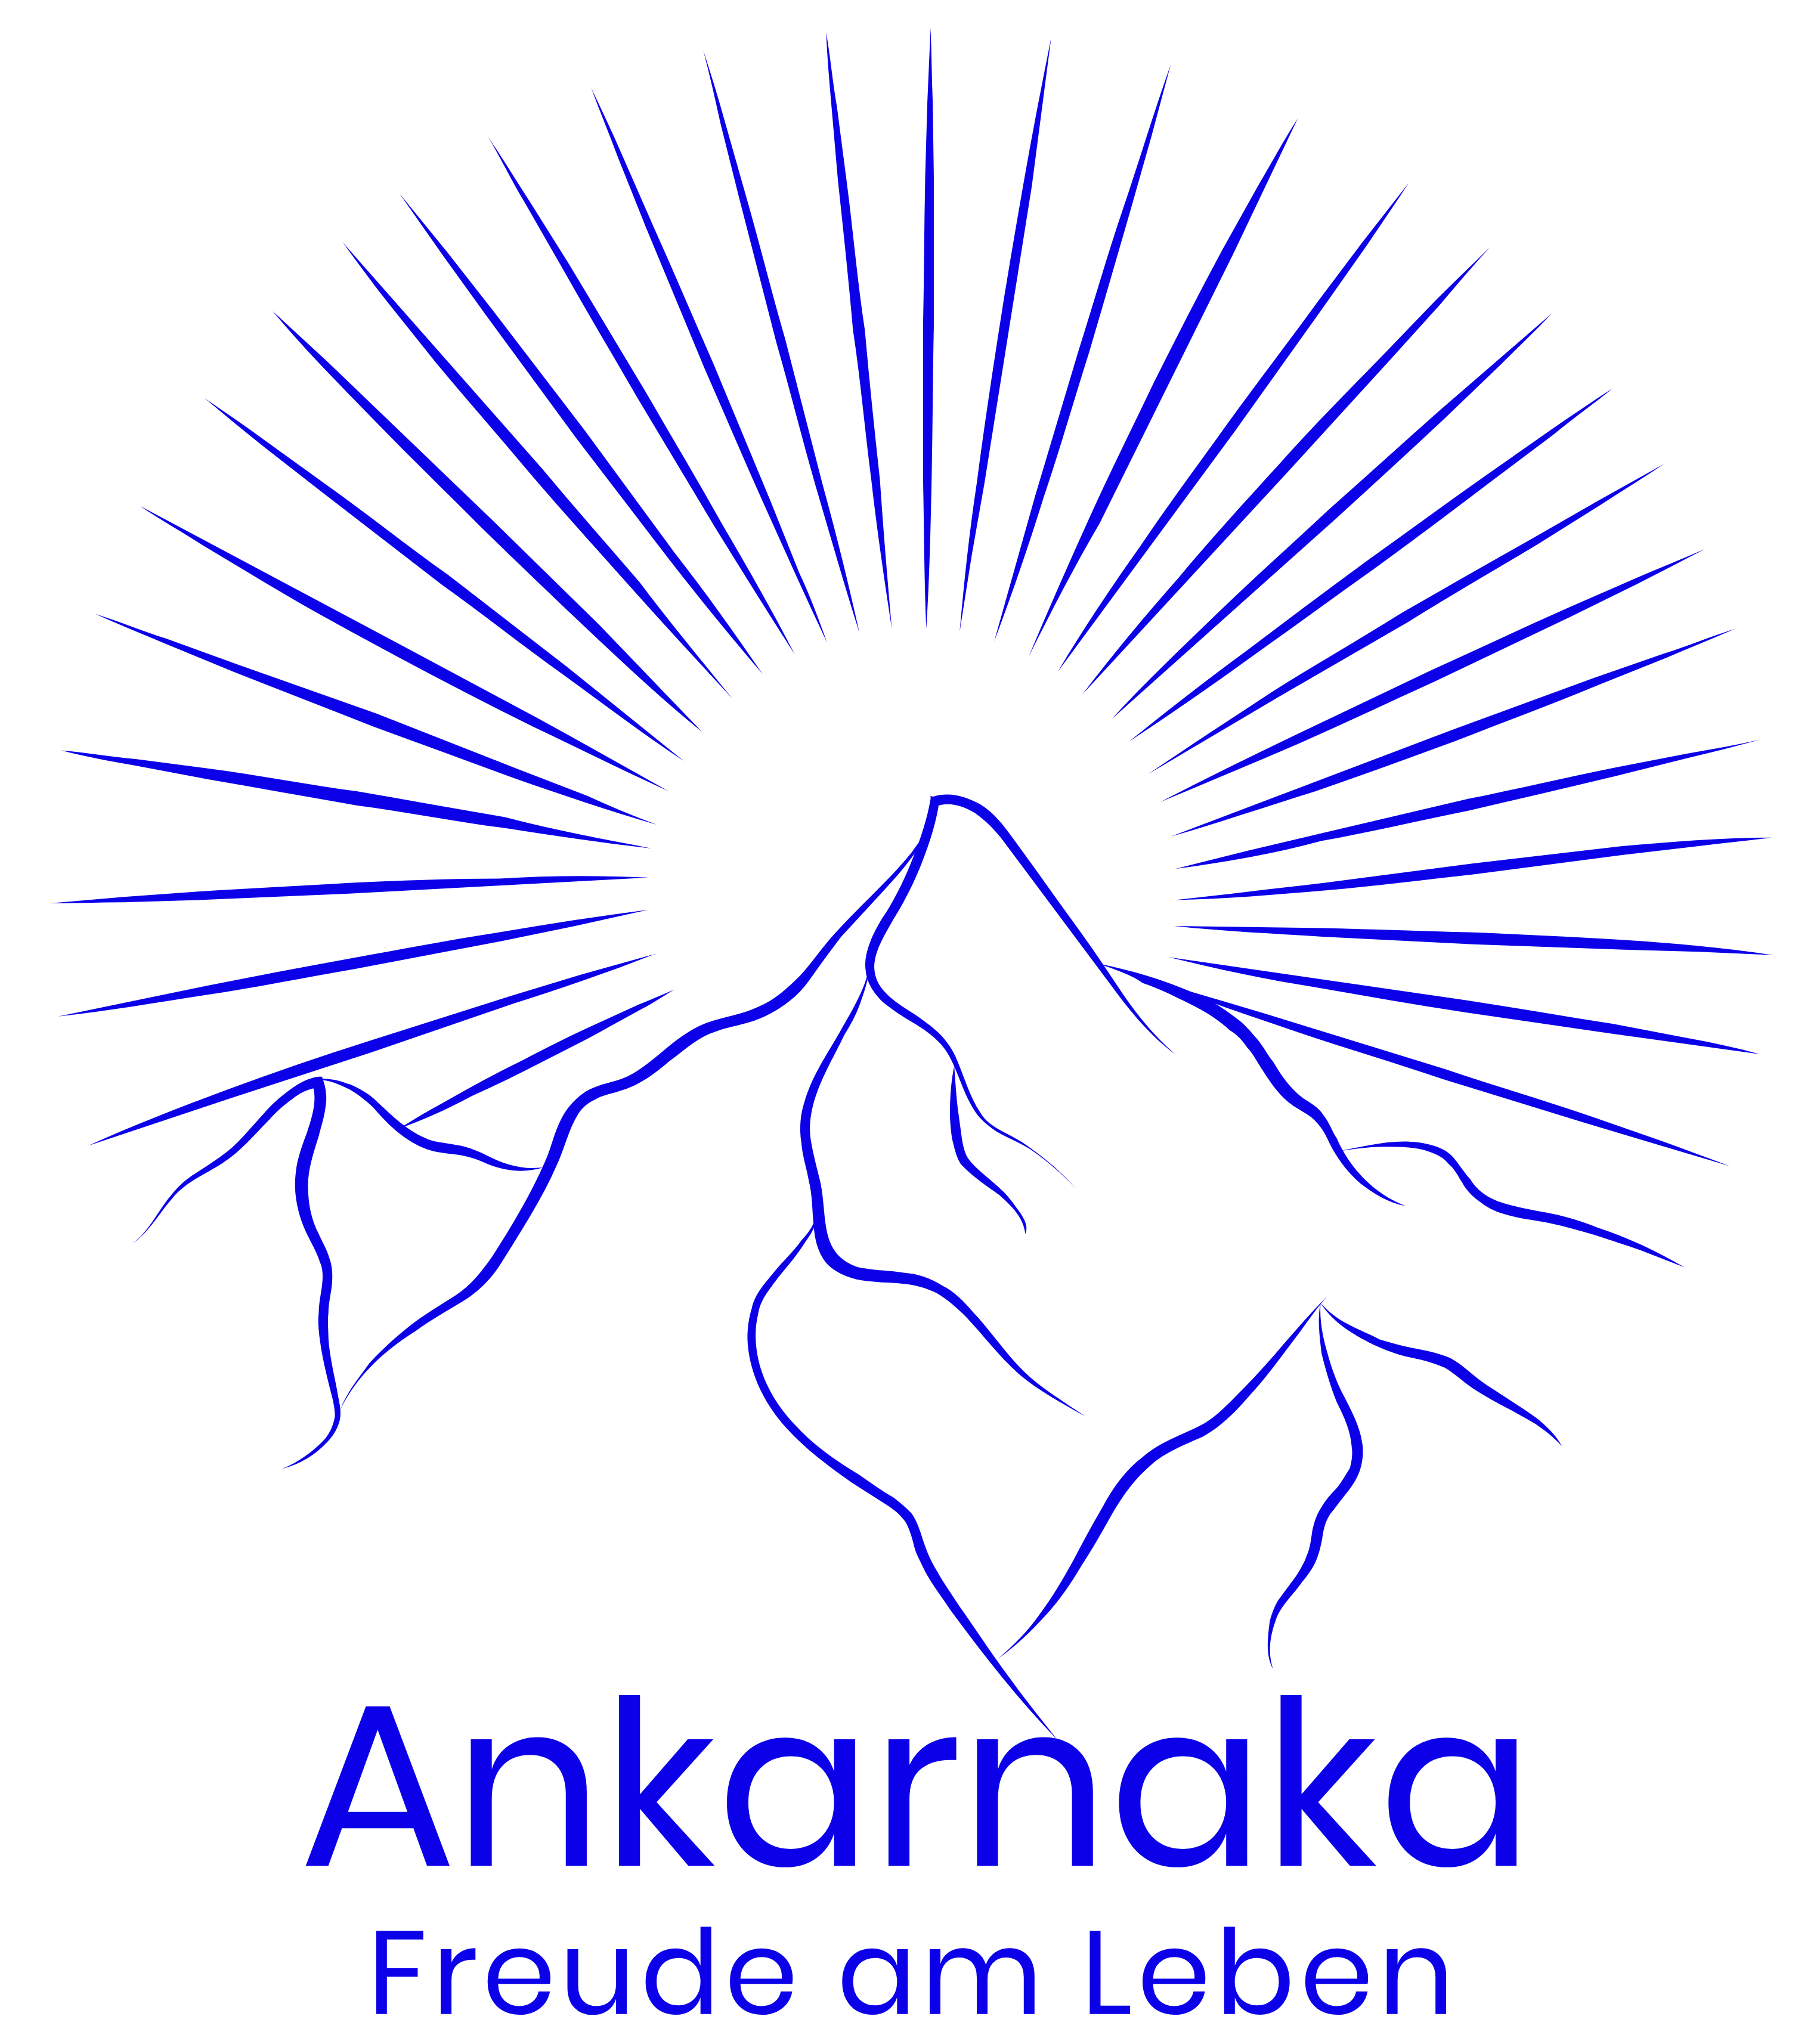 Ankarnaka